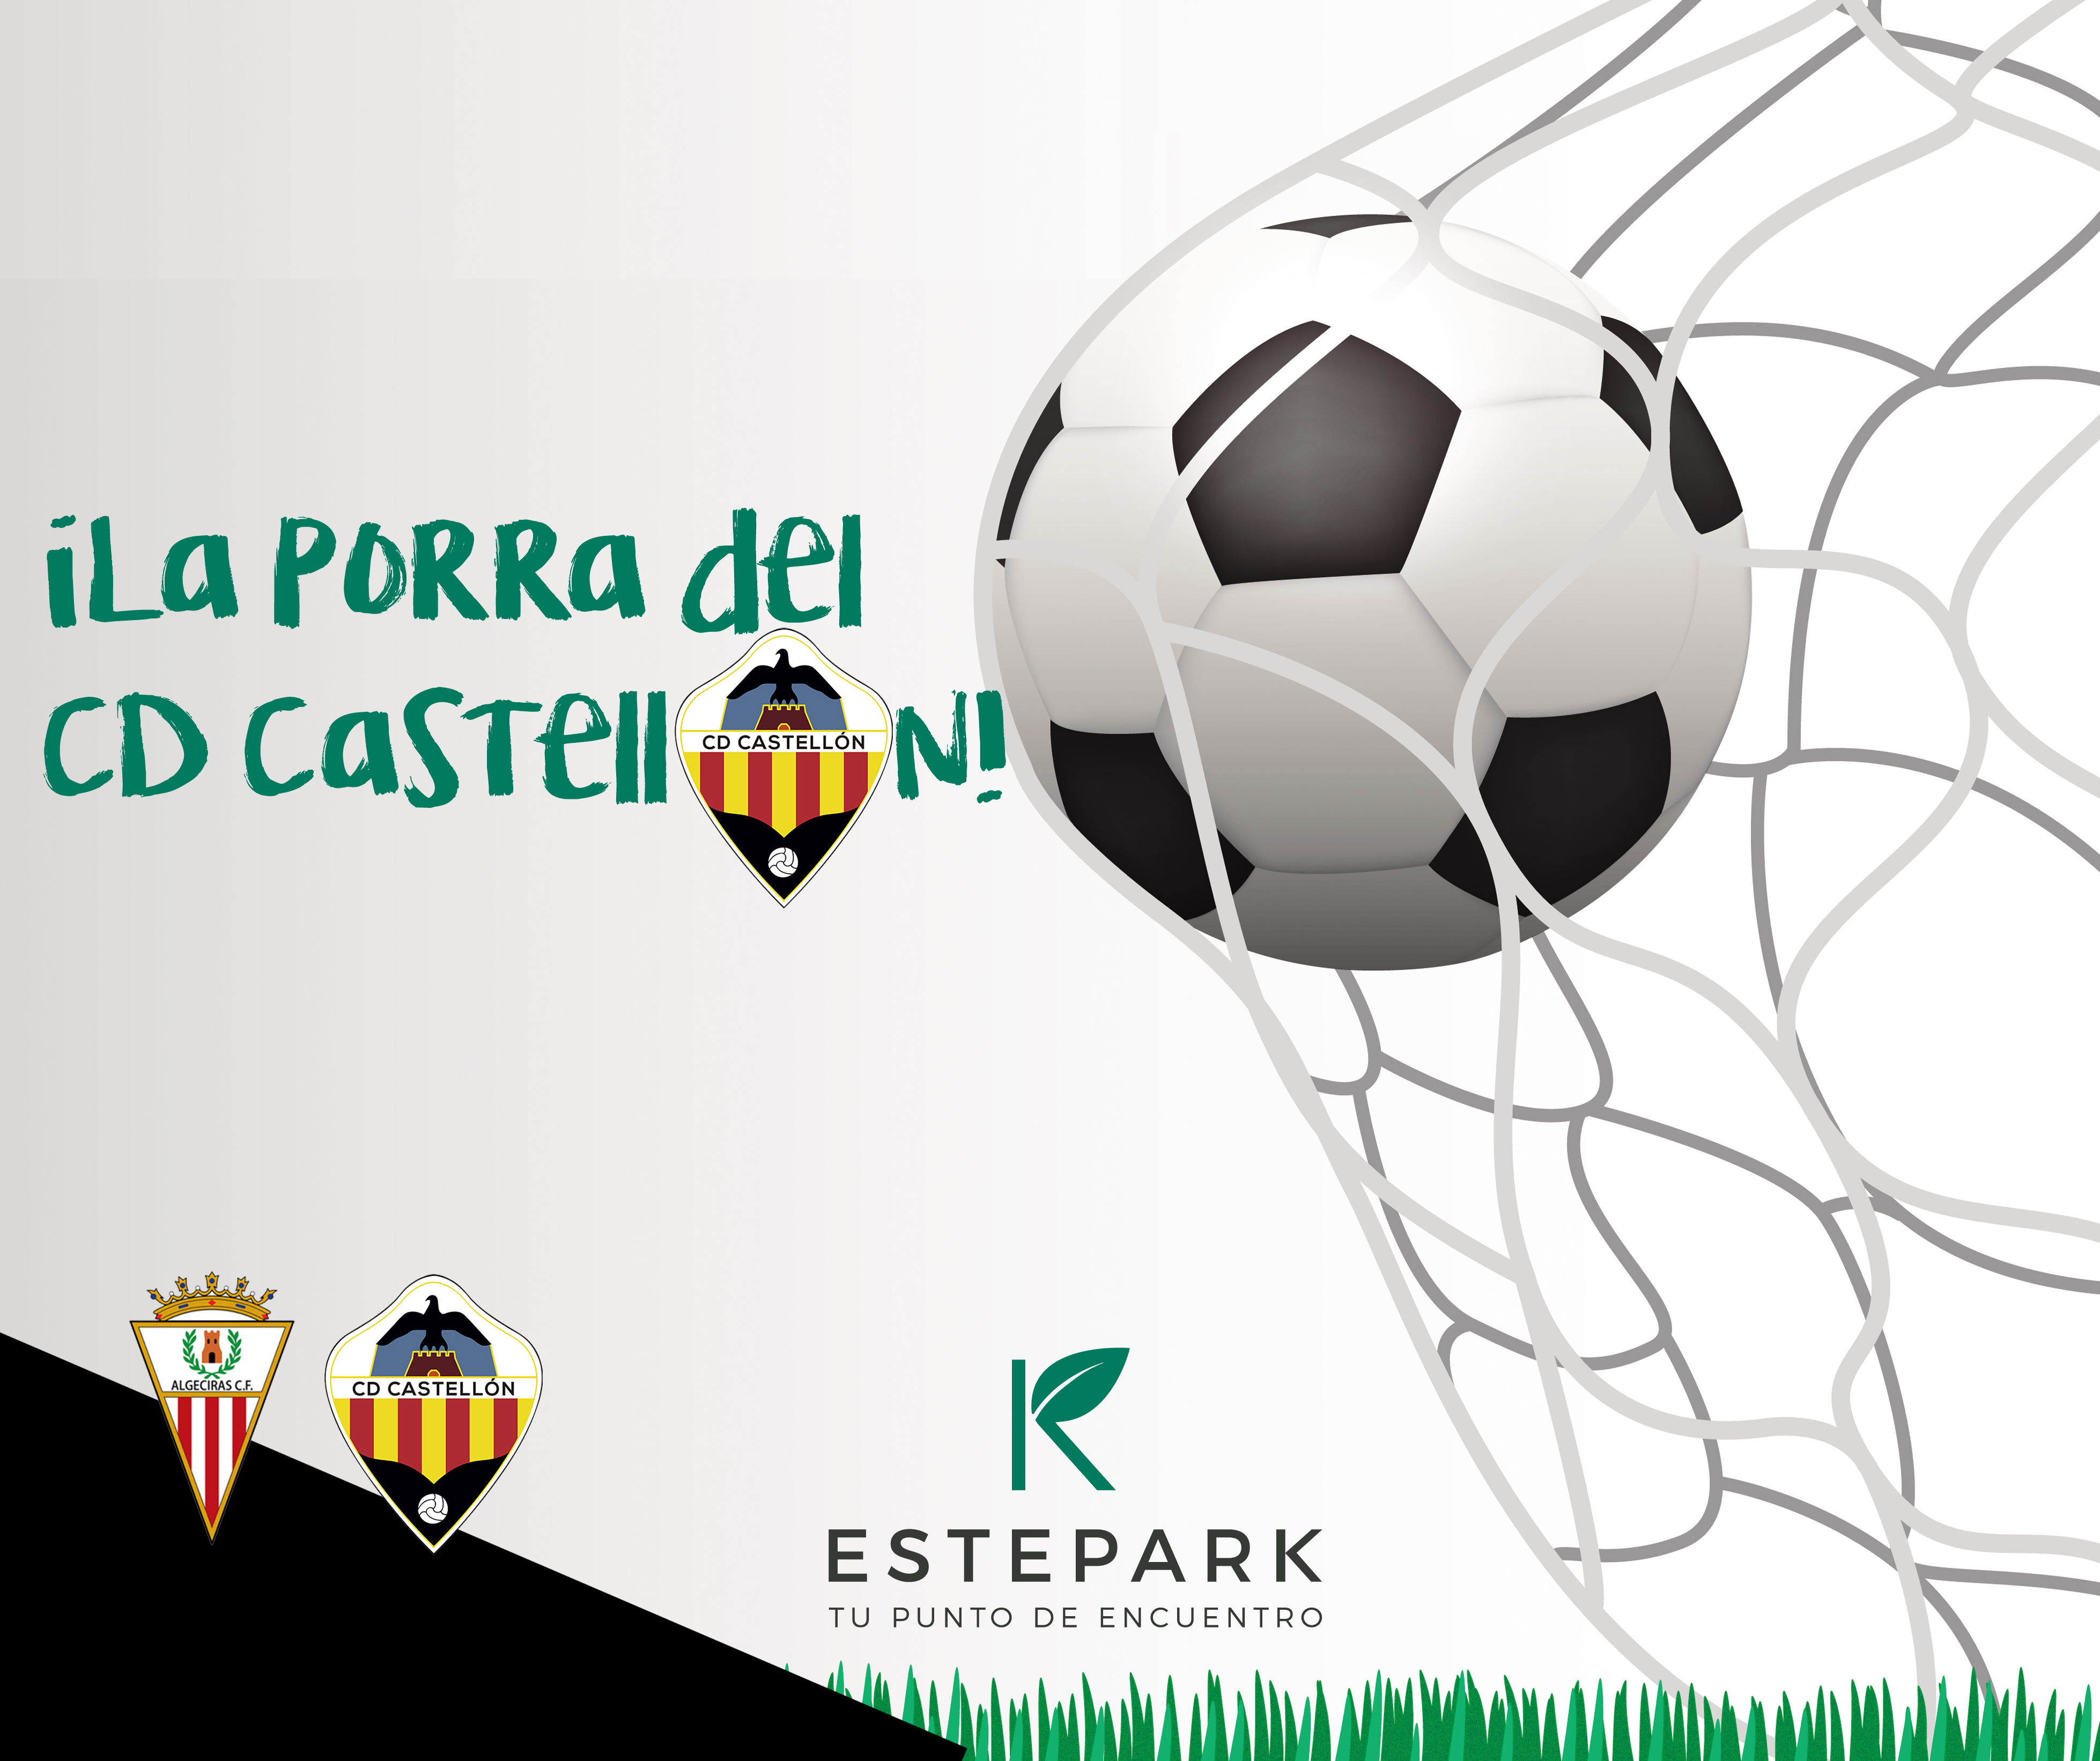 Porra de fútbol Estepark: Algeciras CF VS. CD Castellón